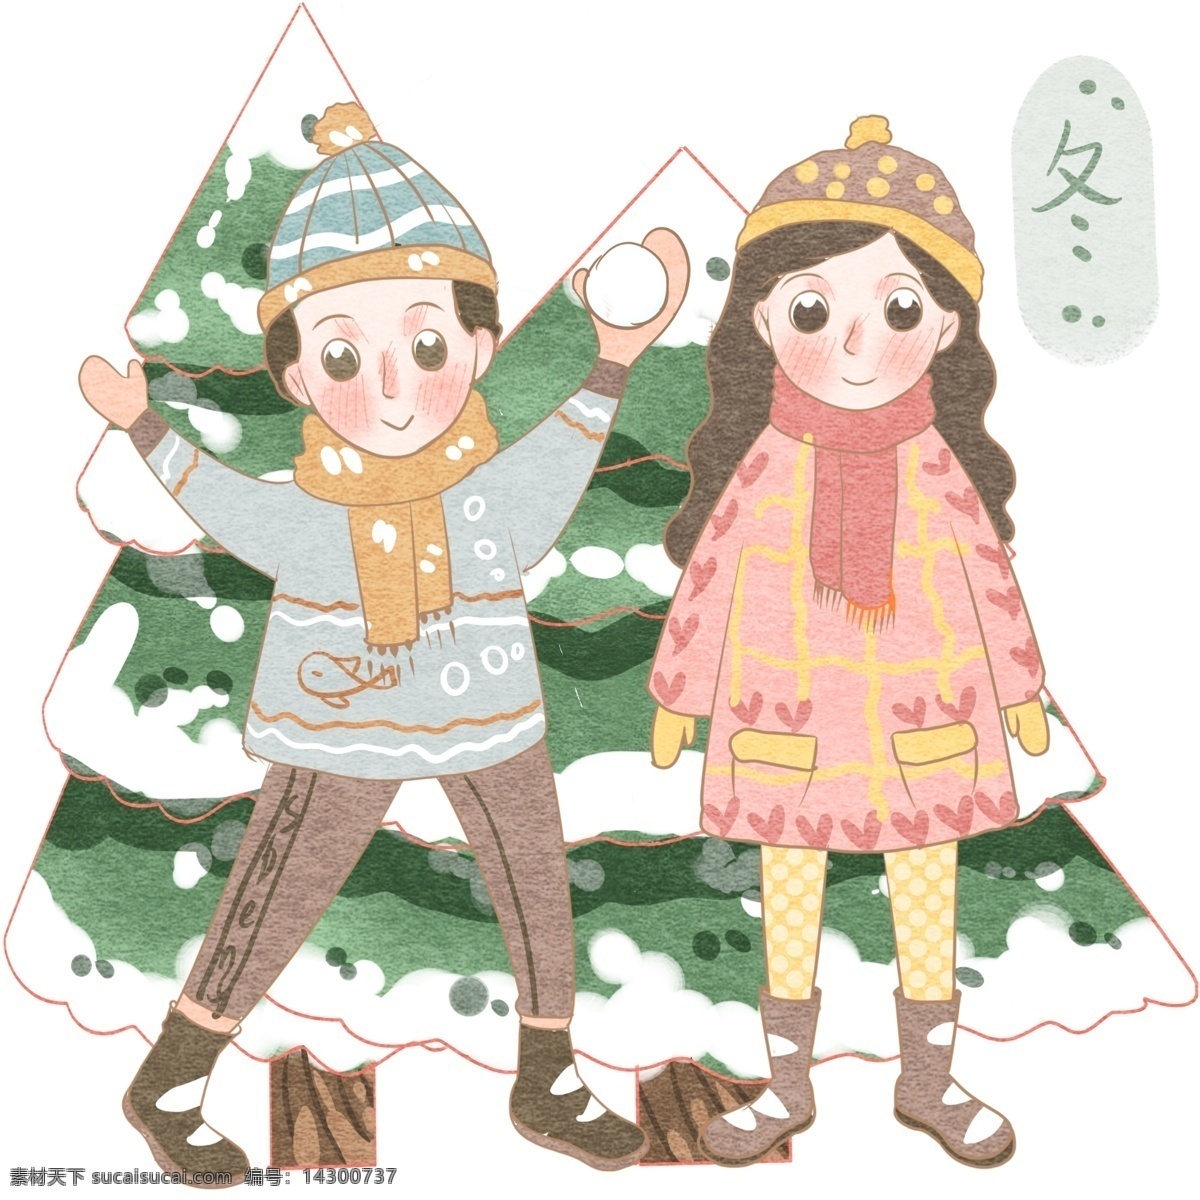 玩 雪 二 人 冬季 厚 衣 卡通 手绘 冬天 儿童插画 波点 毛线帽子 打雪仗 雪花飞舞 过冬 开心 落雪松树